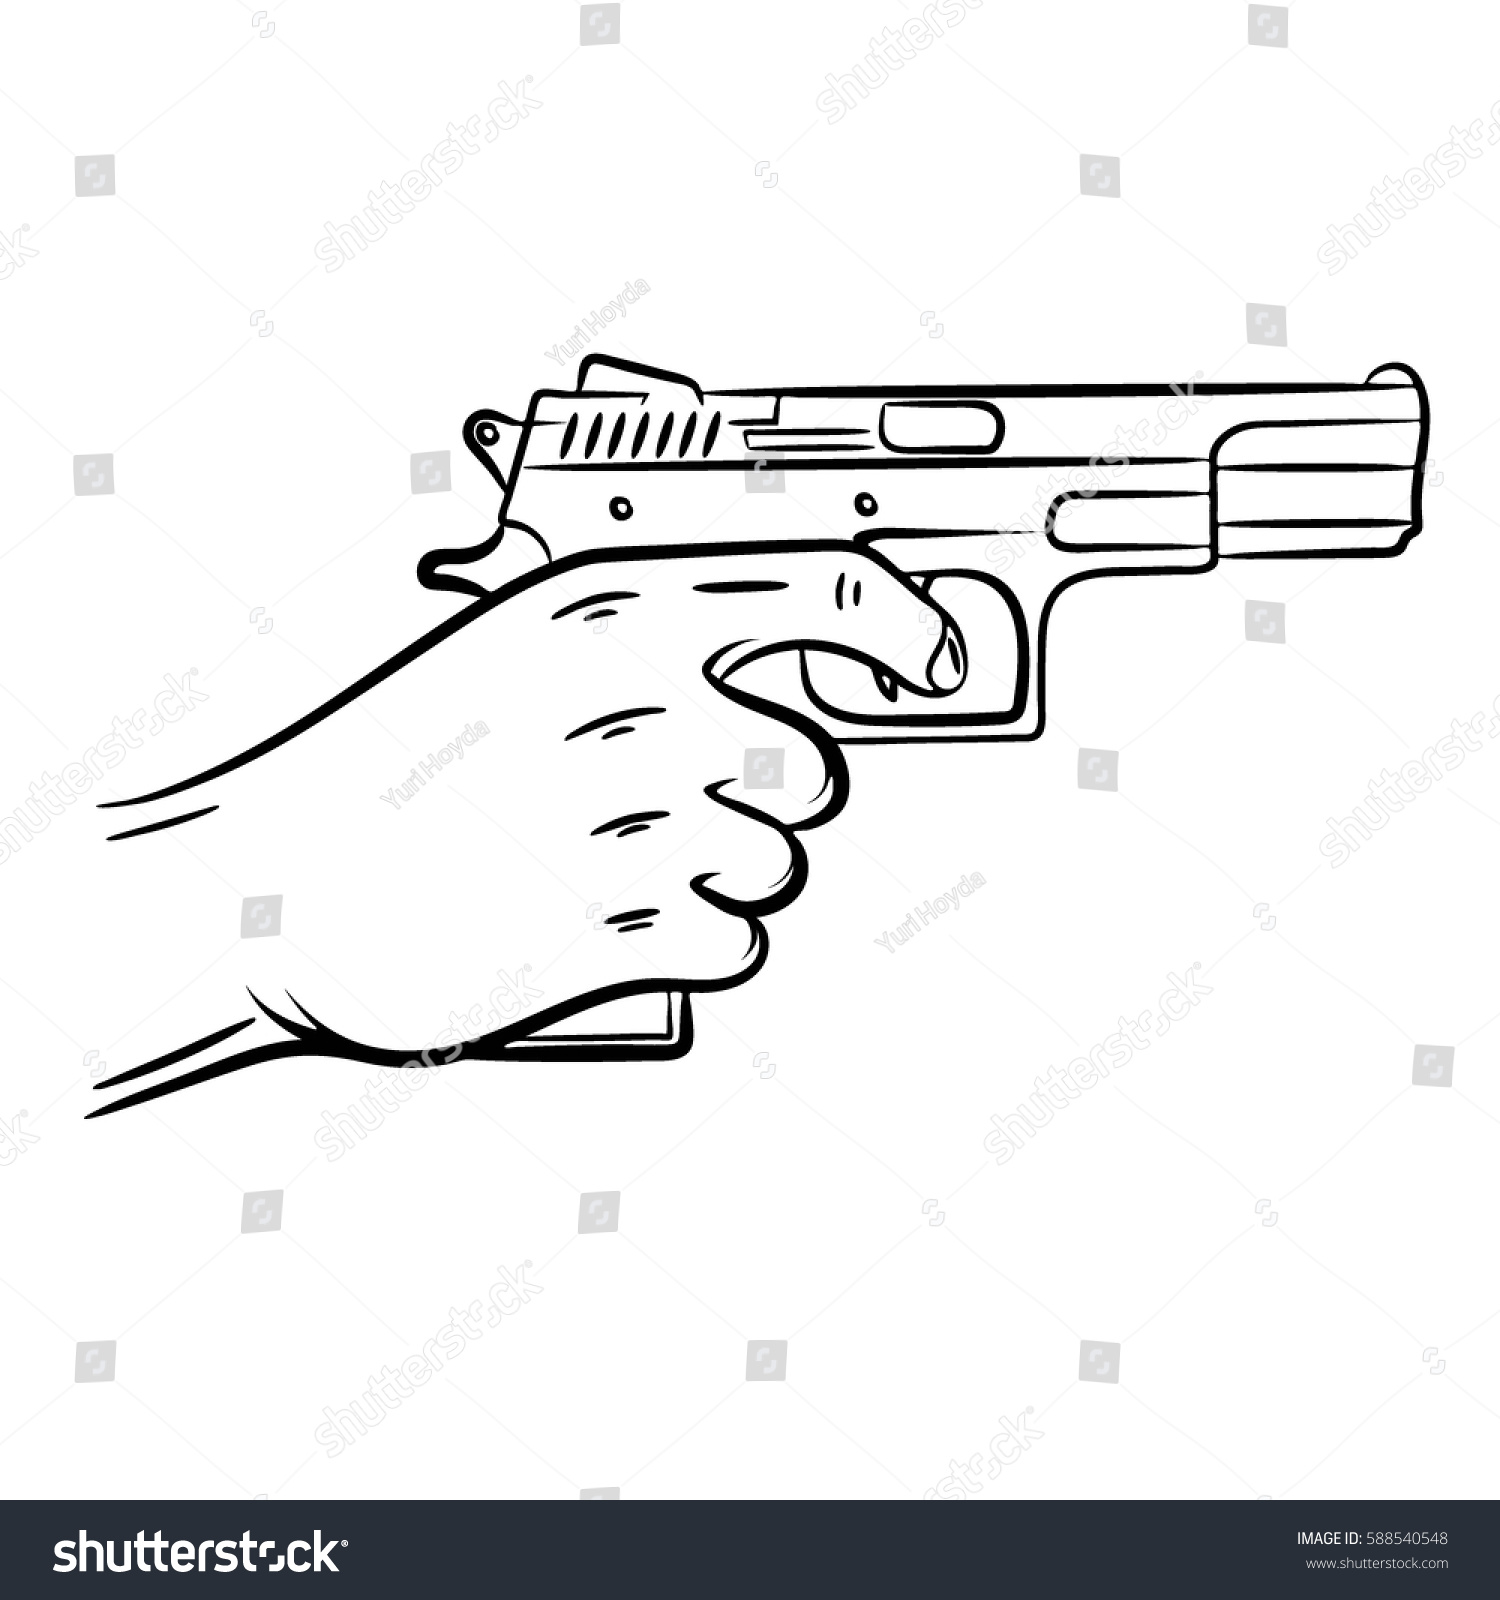 Револьвер в руке нарисованный